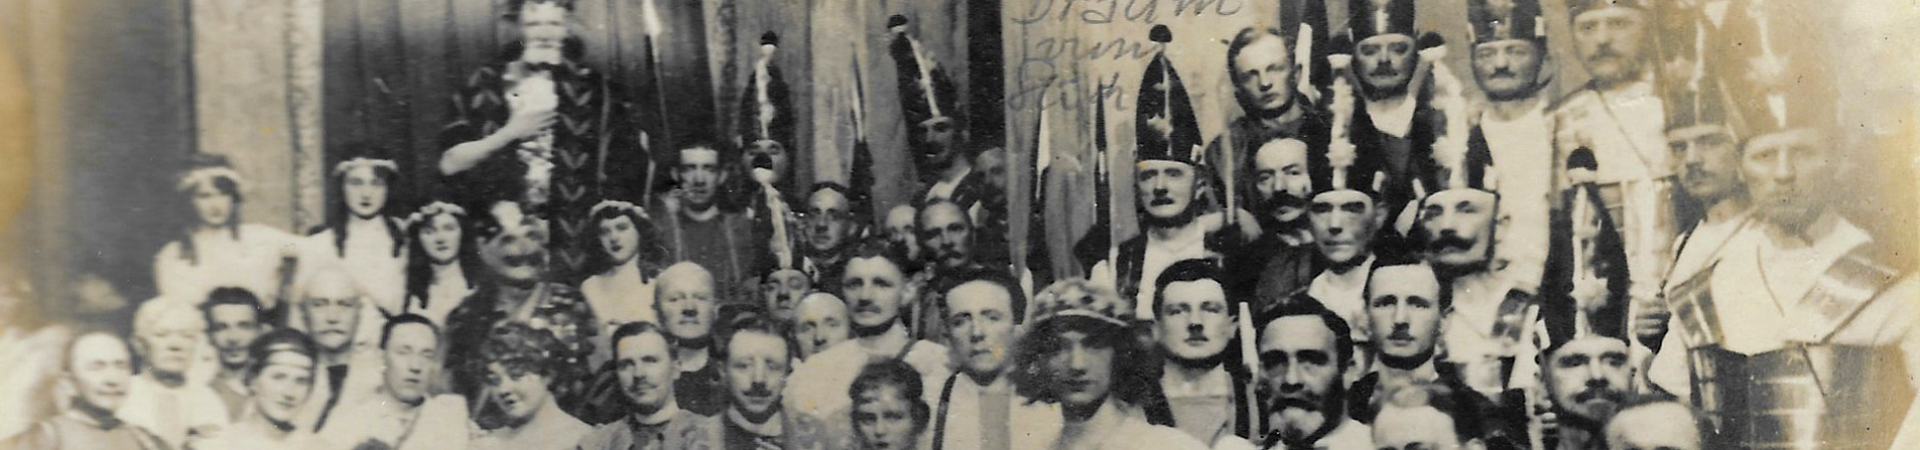 Zillche vun der Wolkenburg oder da Draum vum Glöck - Divertissementchen 1920 - Gruppenbild aller Darsteller